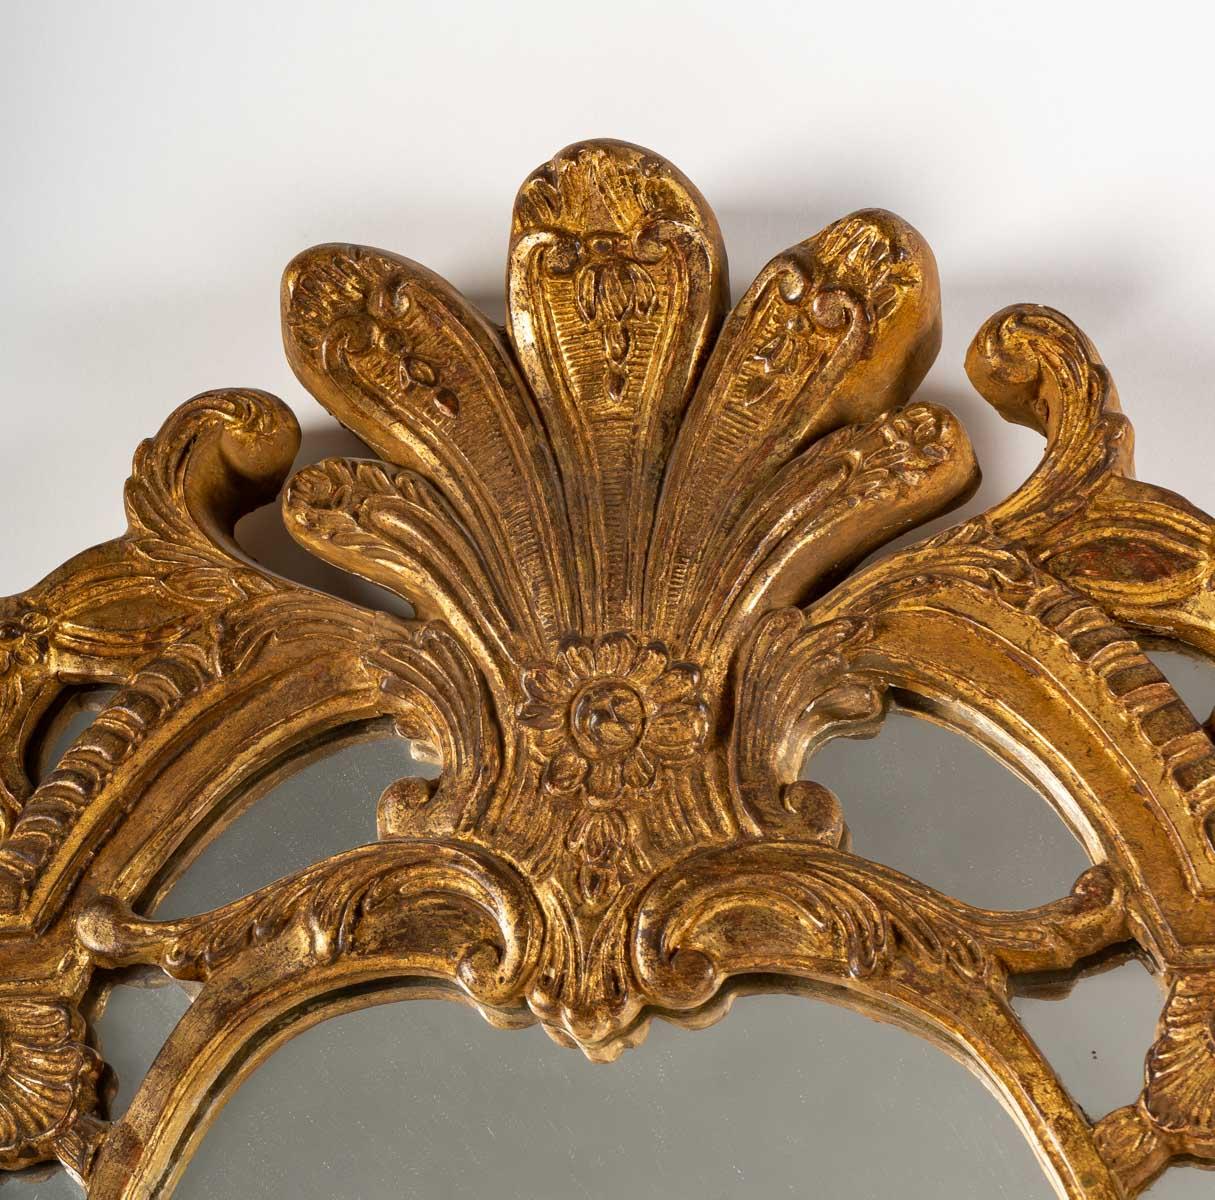 A Regency style gilt Stucco mirror, 20th century, perfect condition.
Measures: H: 120 cm, W: 65 cm, D: 4.5 cm
réf 2985.